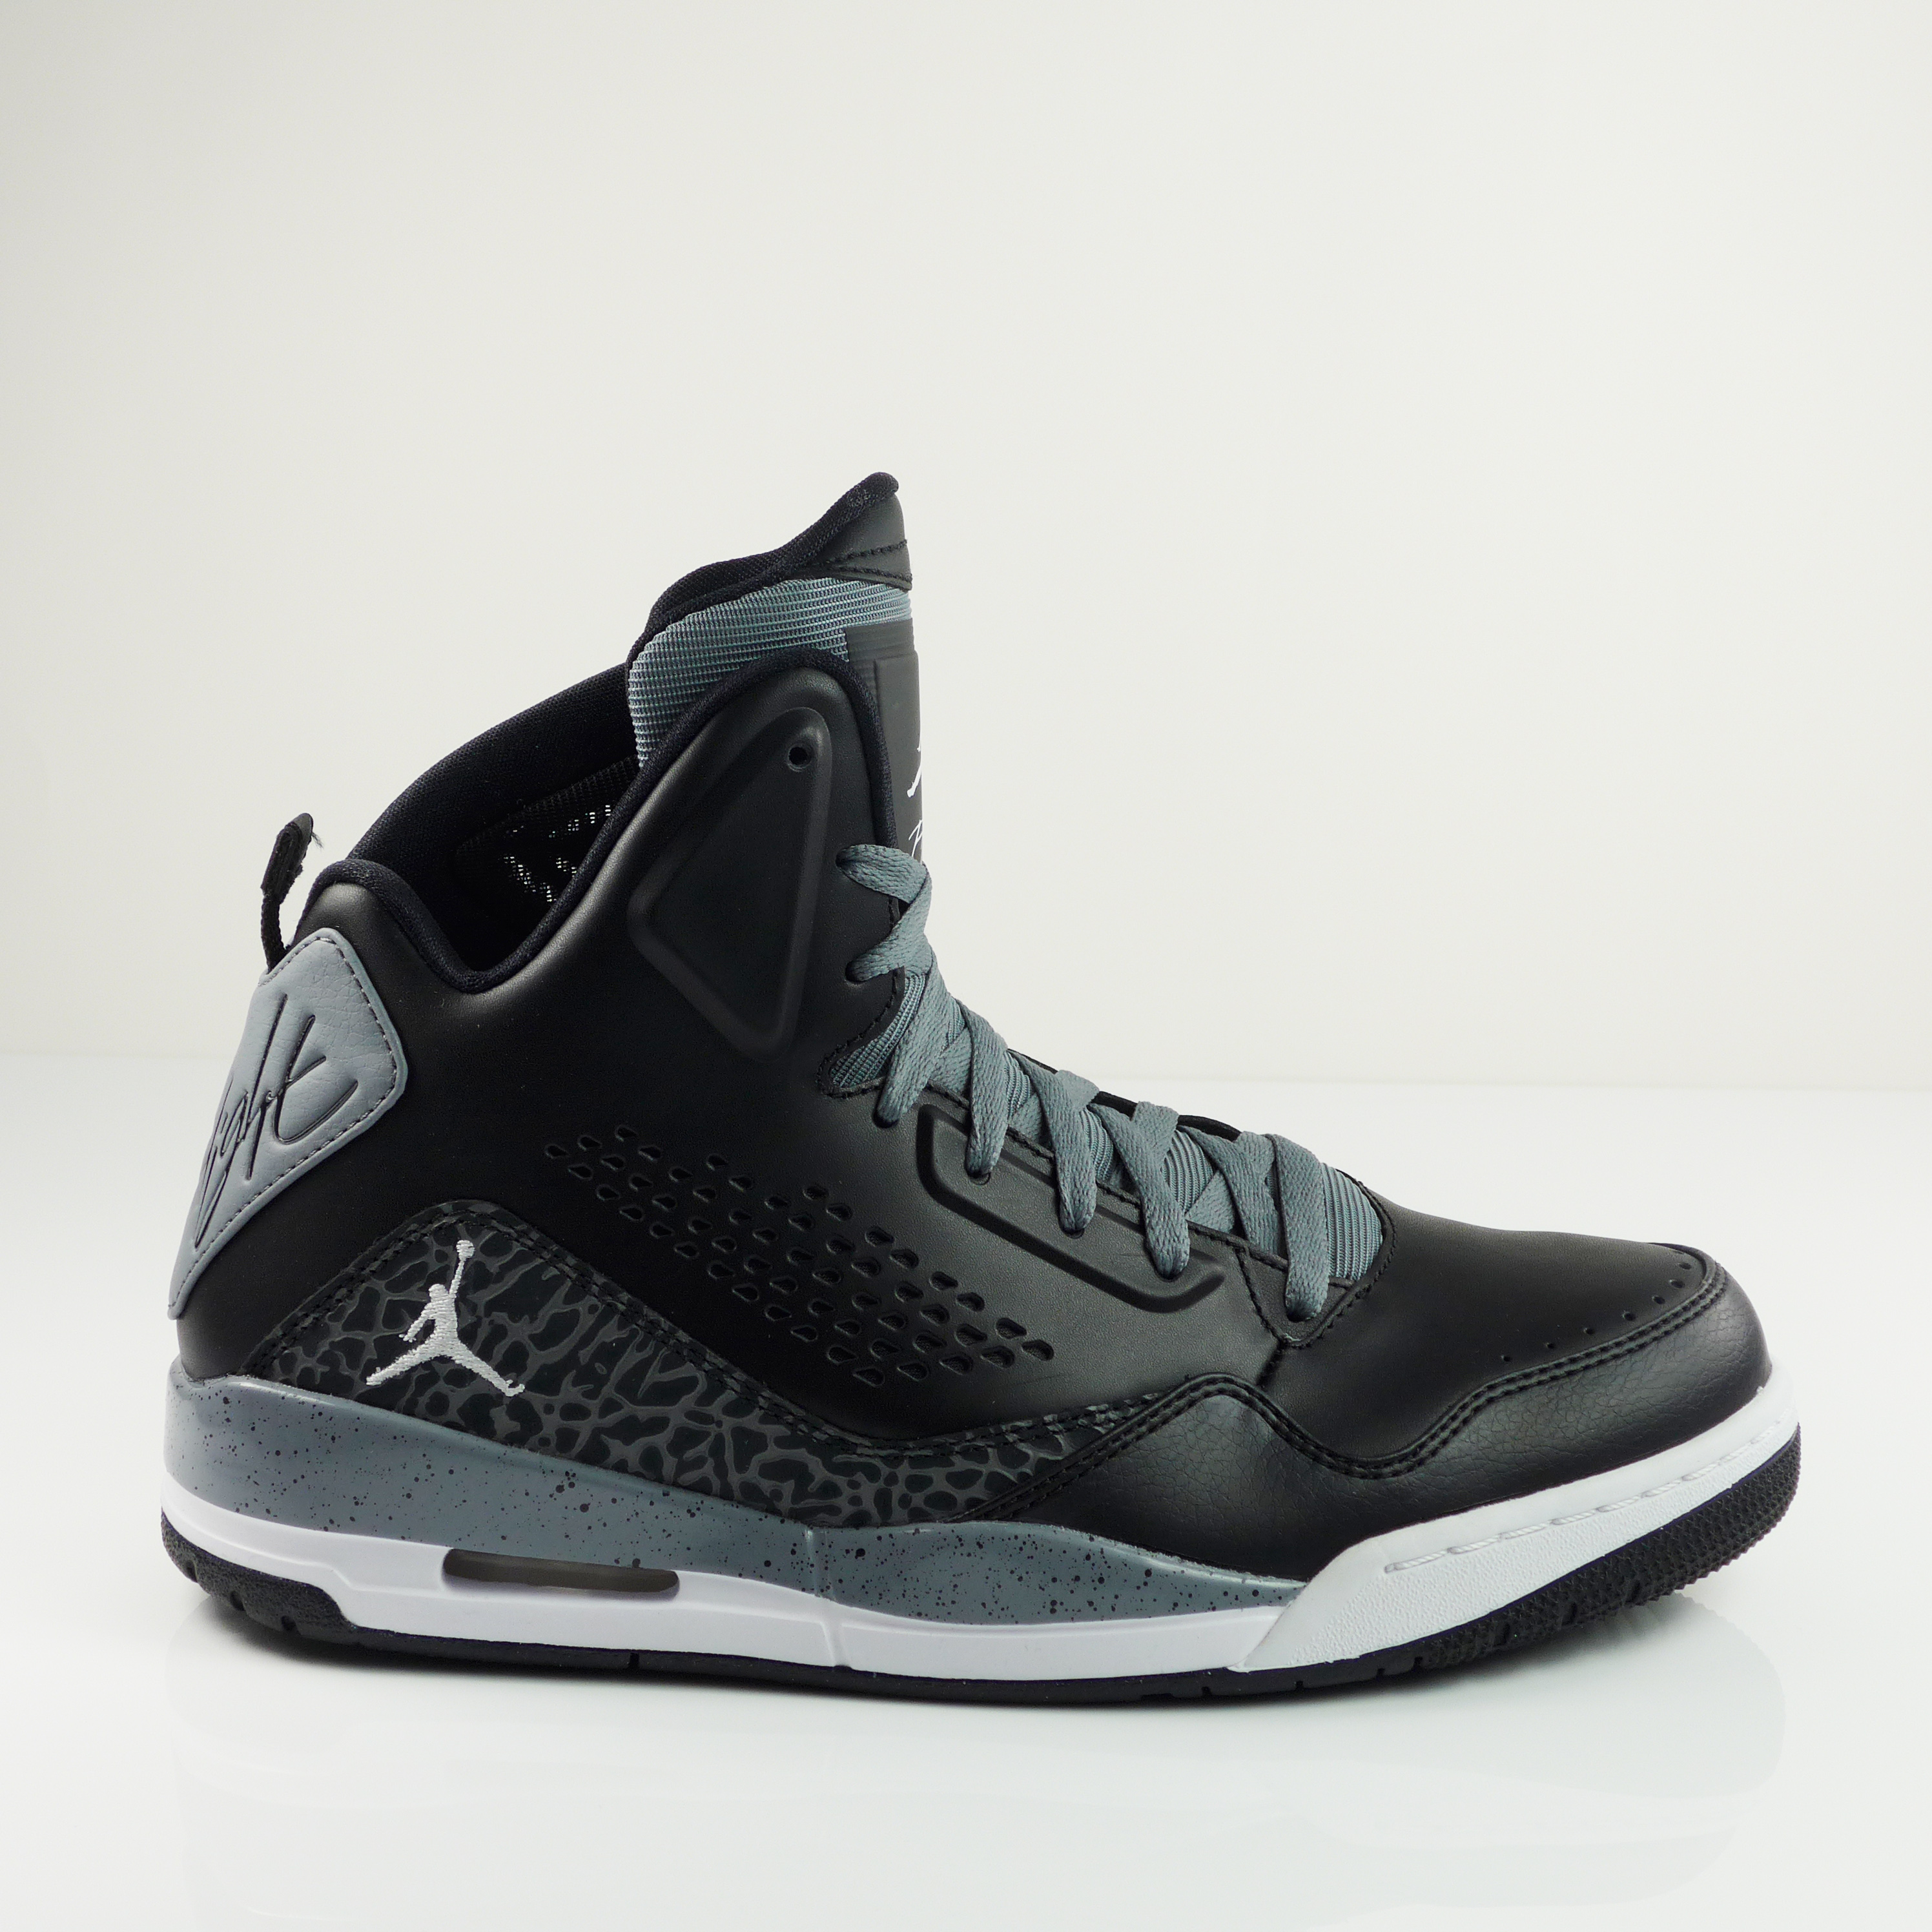 Nike Air Jordan SC-3 PRM Black Shoes NBA Trainers Sneakers 641444 003 ...